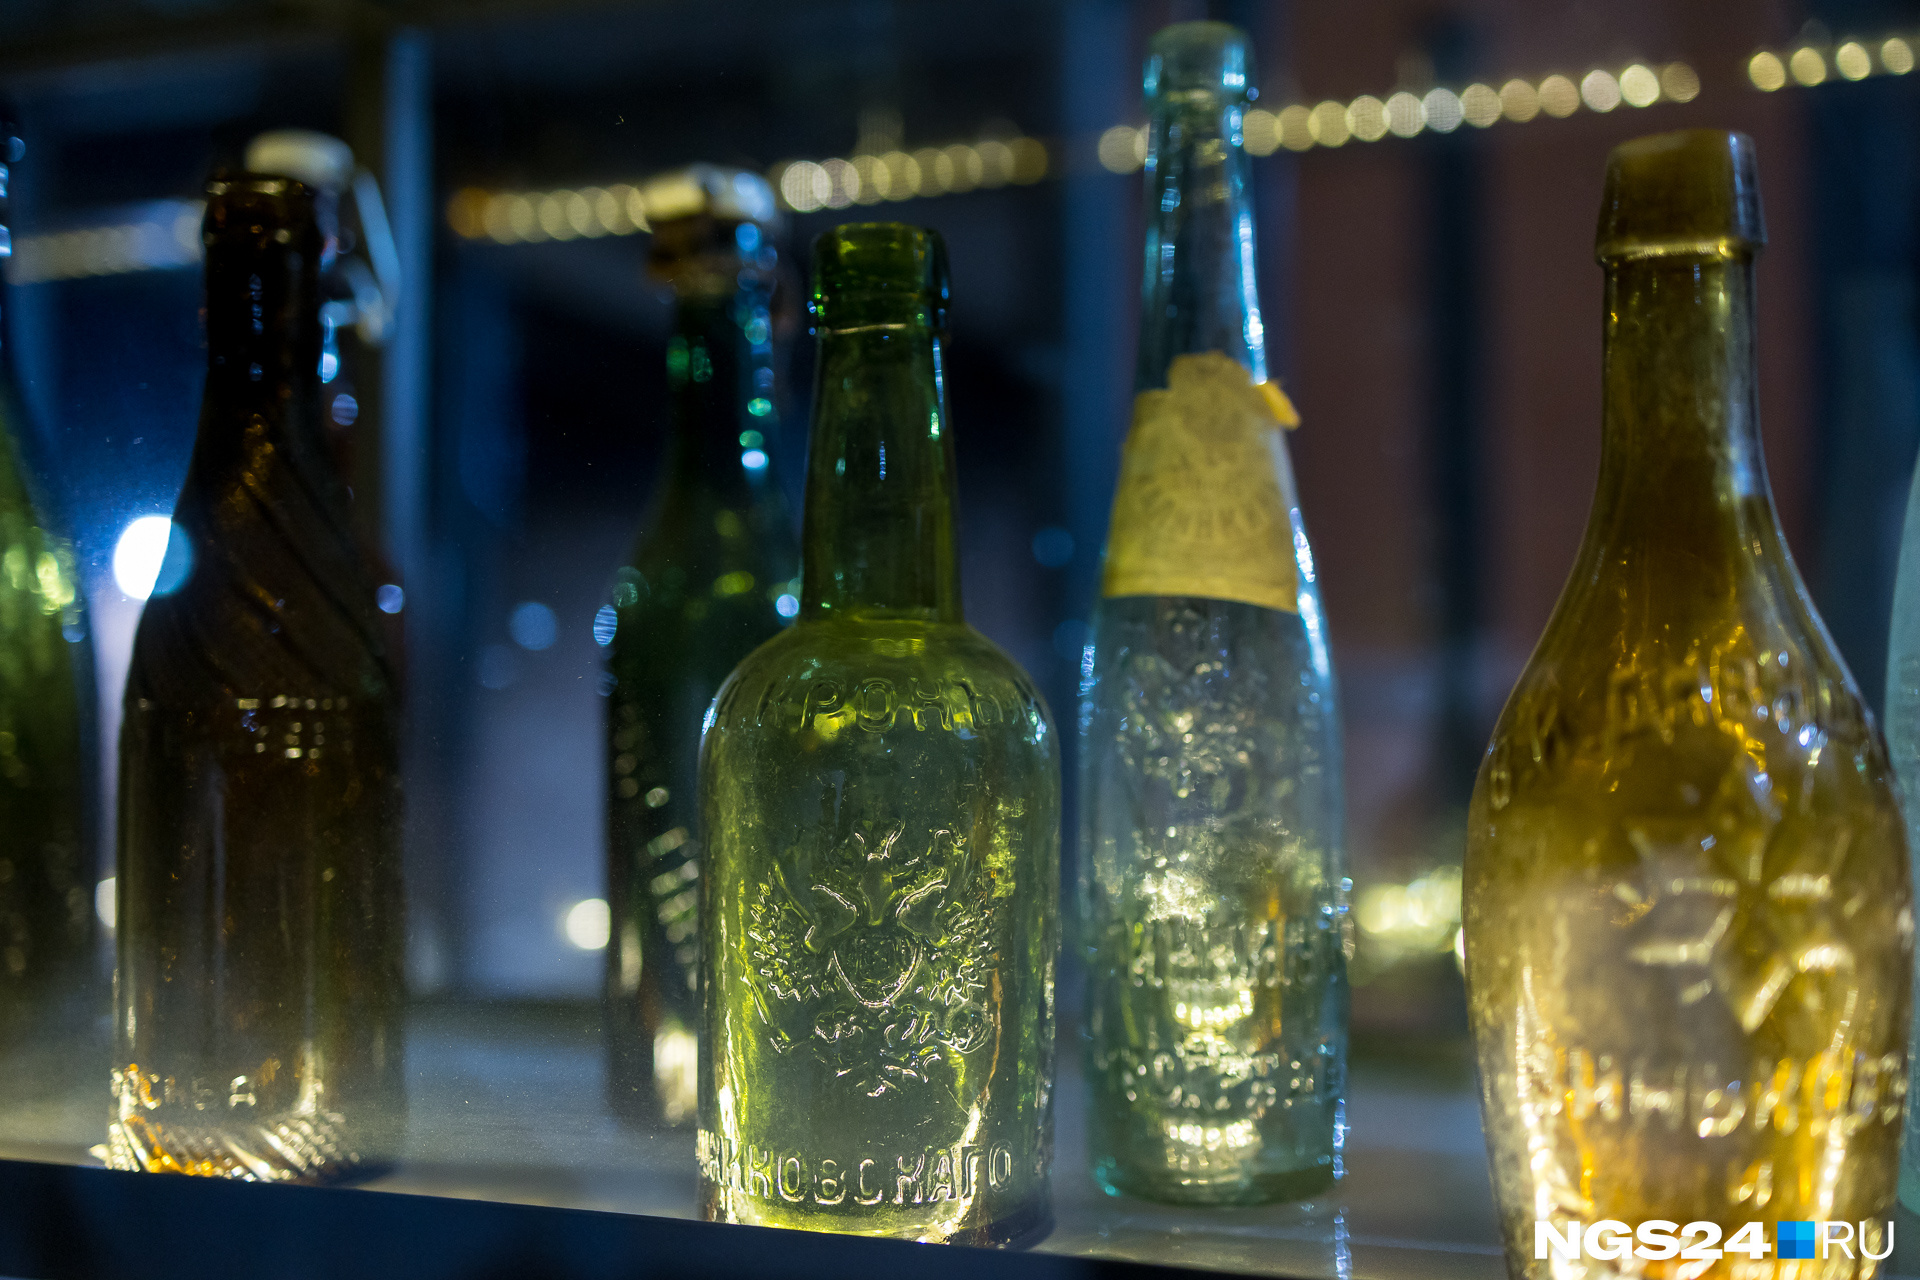 Самая старая бутылка в коллекции Бримана датирована 1856 годом